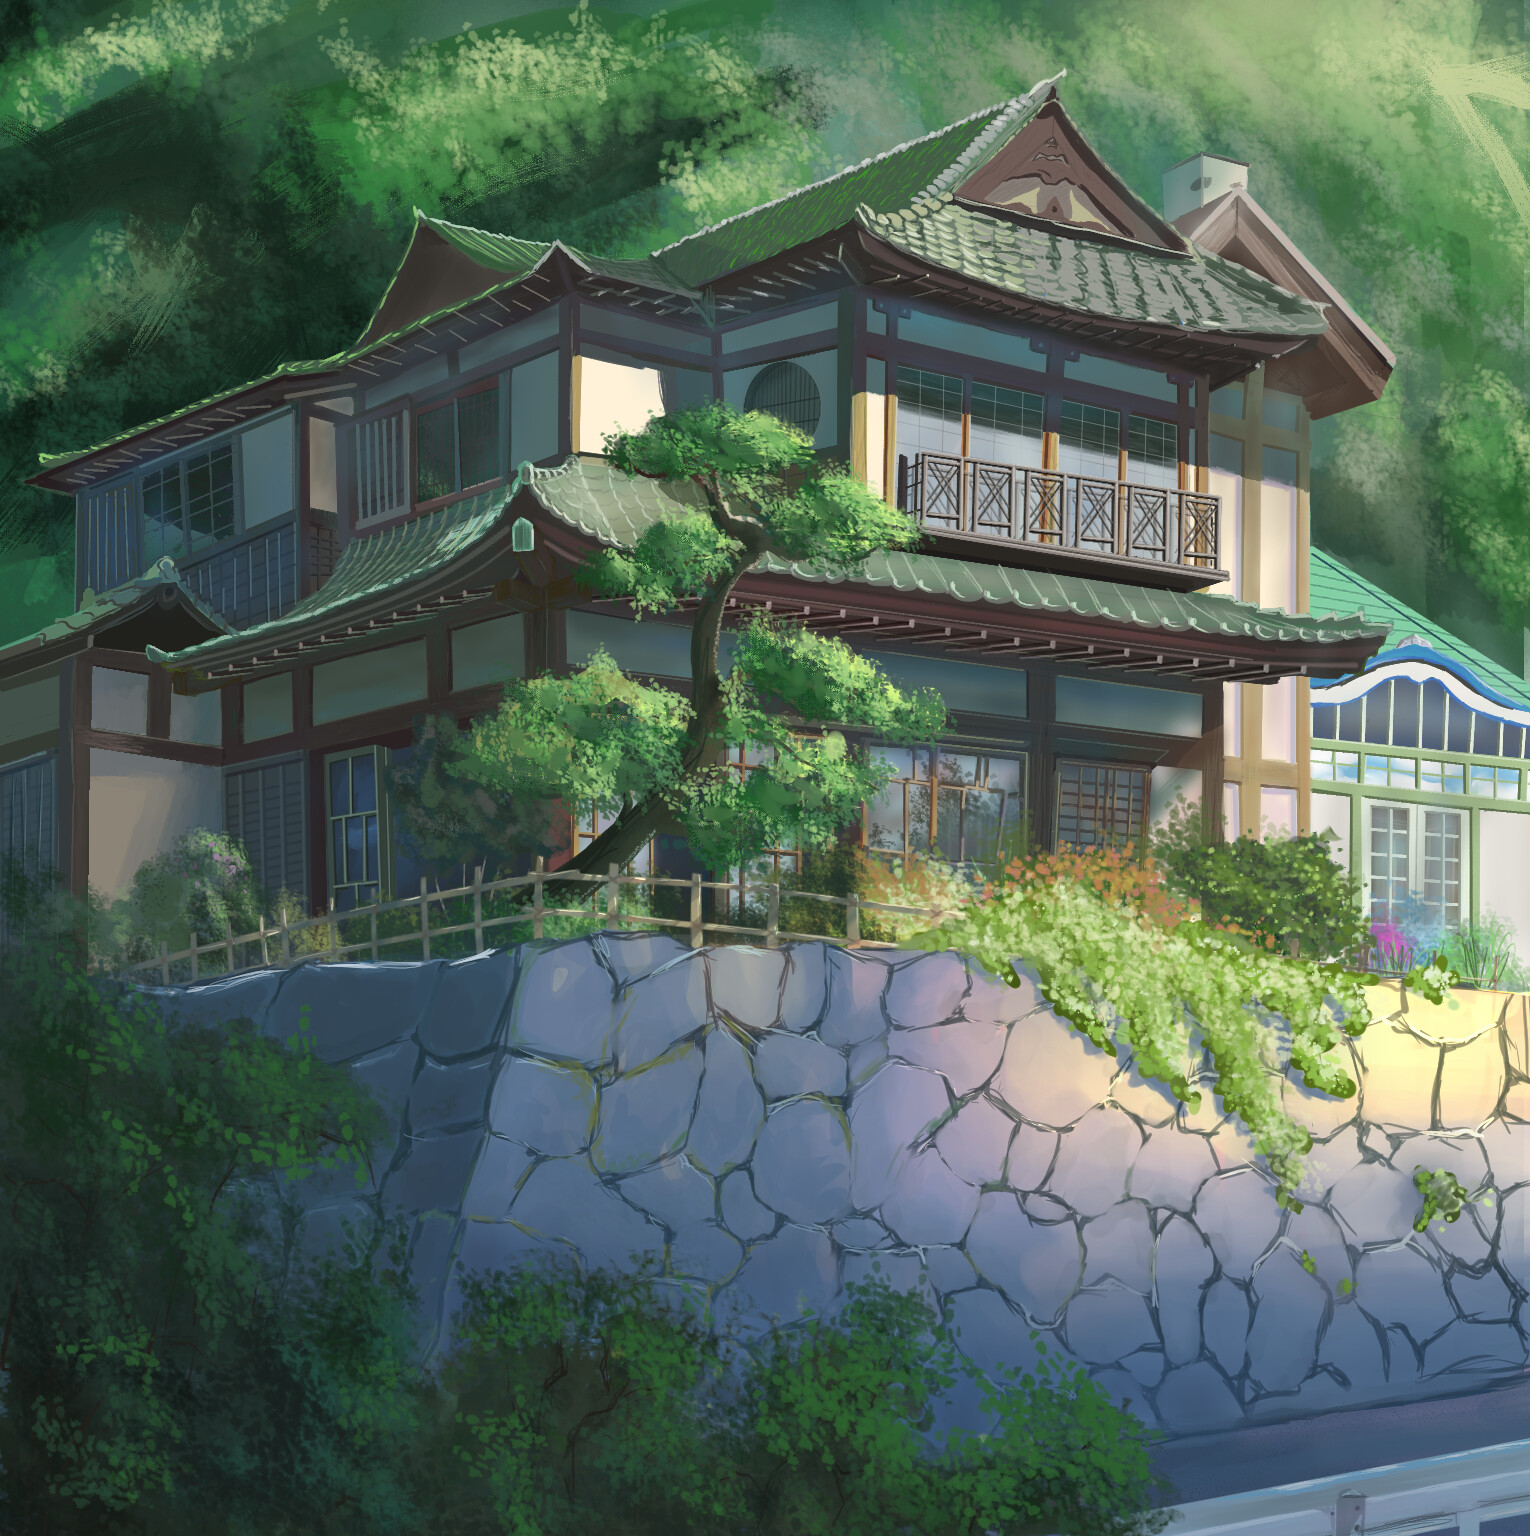 Kimi no Na wa  Kimi no na wa, Studio ghibli background, Anime scenery